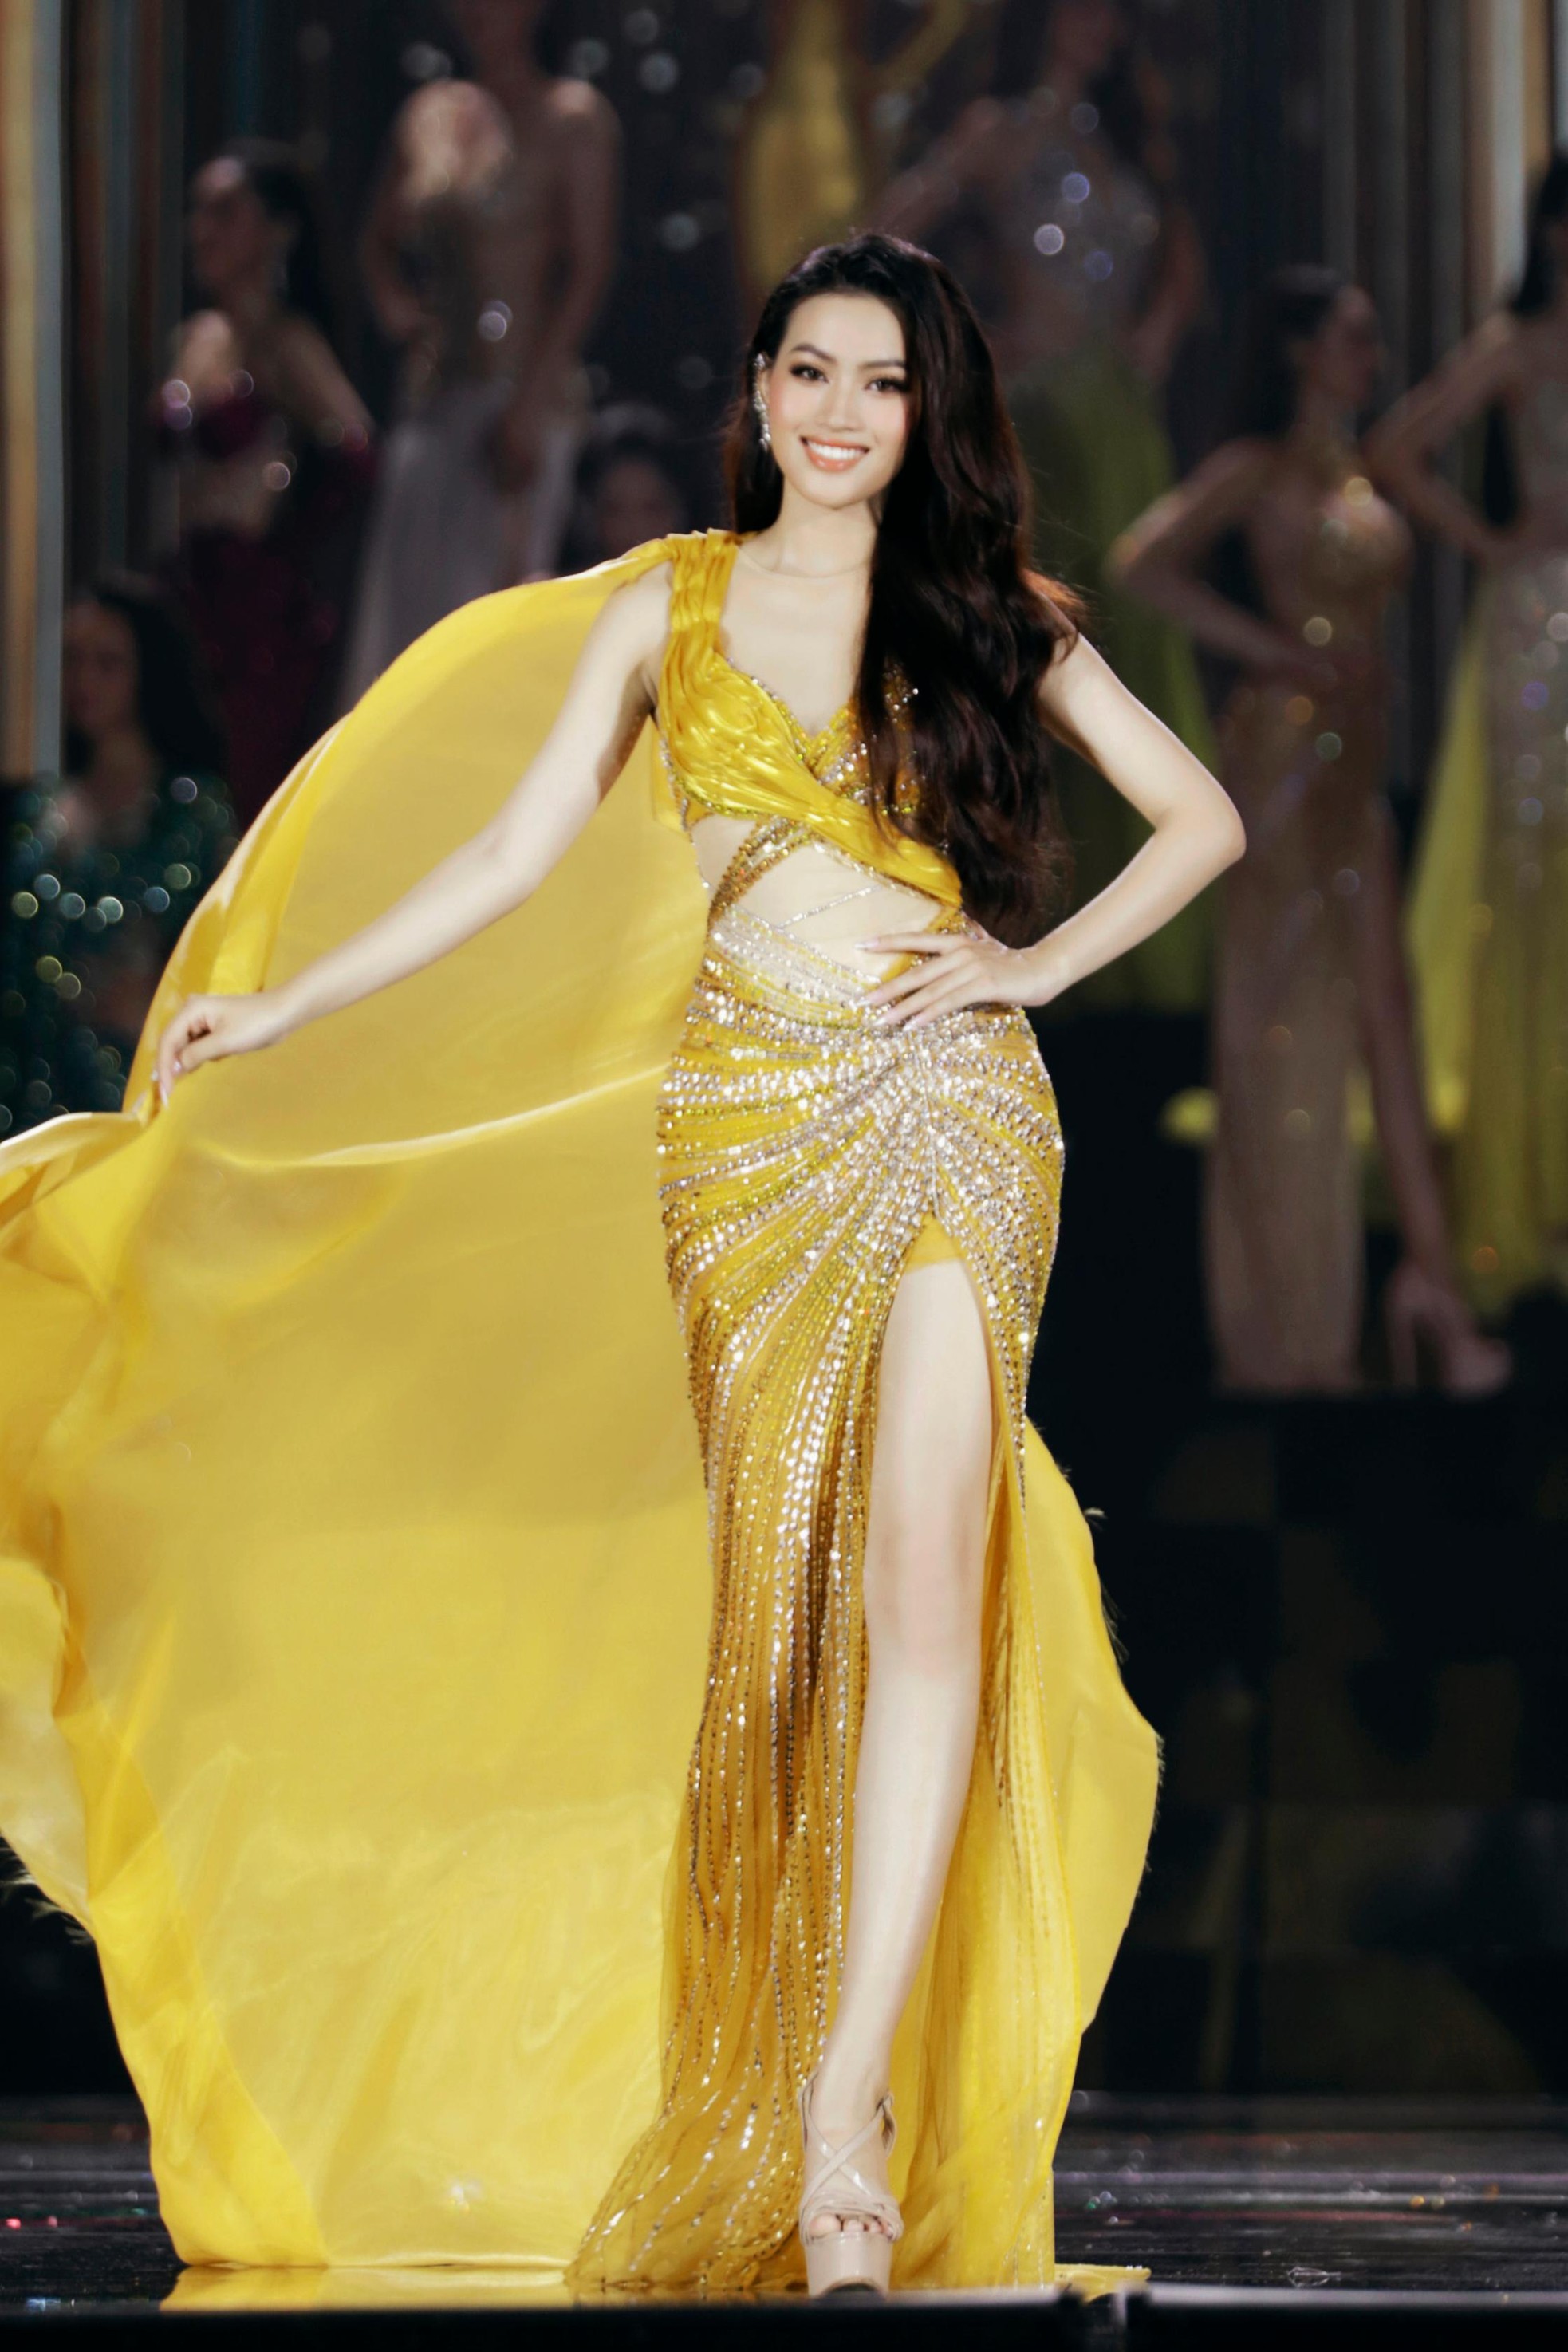 Váy xuyên thấu, xẻ sâu ở Hoa hậu Hòa bình Việt Nam 2022 - ảnh 6